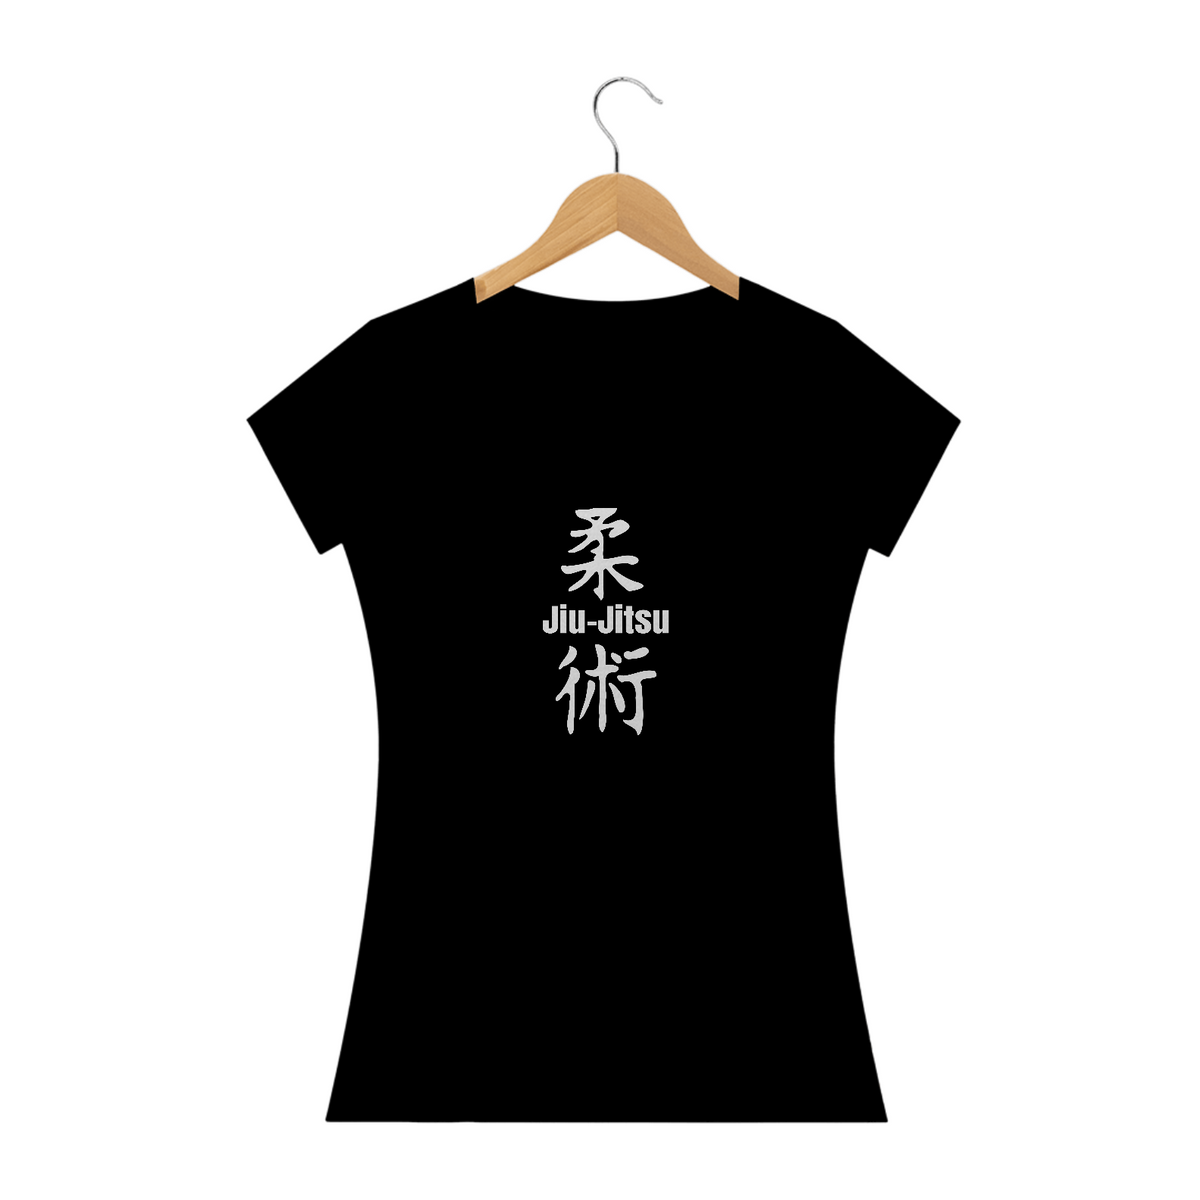 Nome do produto: Jiu-jitsu - Camisa Jiu-jitsu Letras